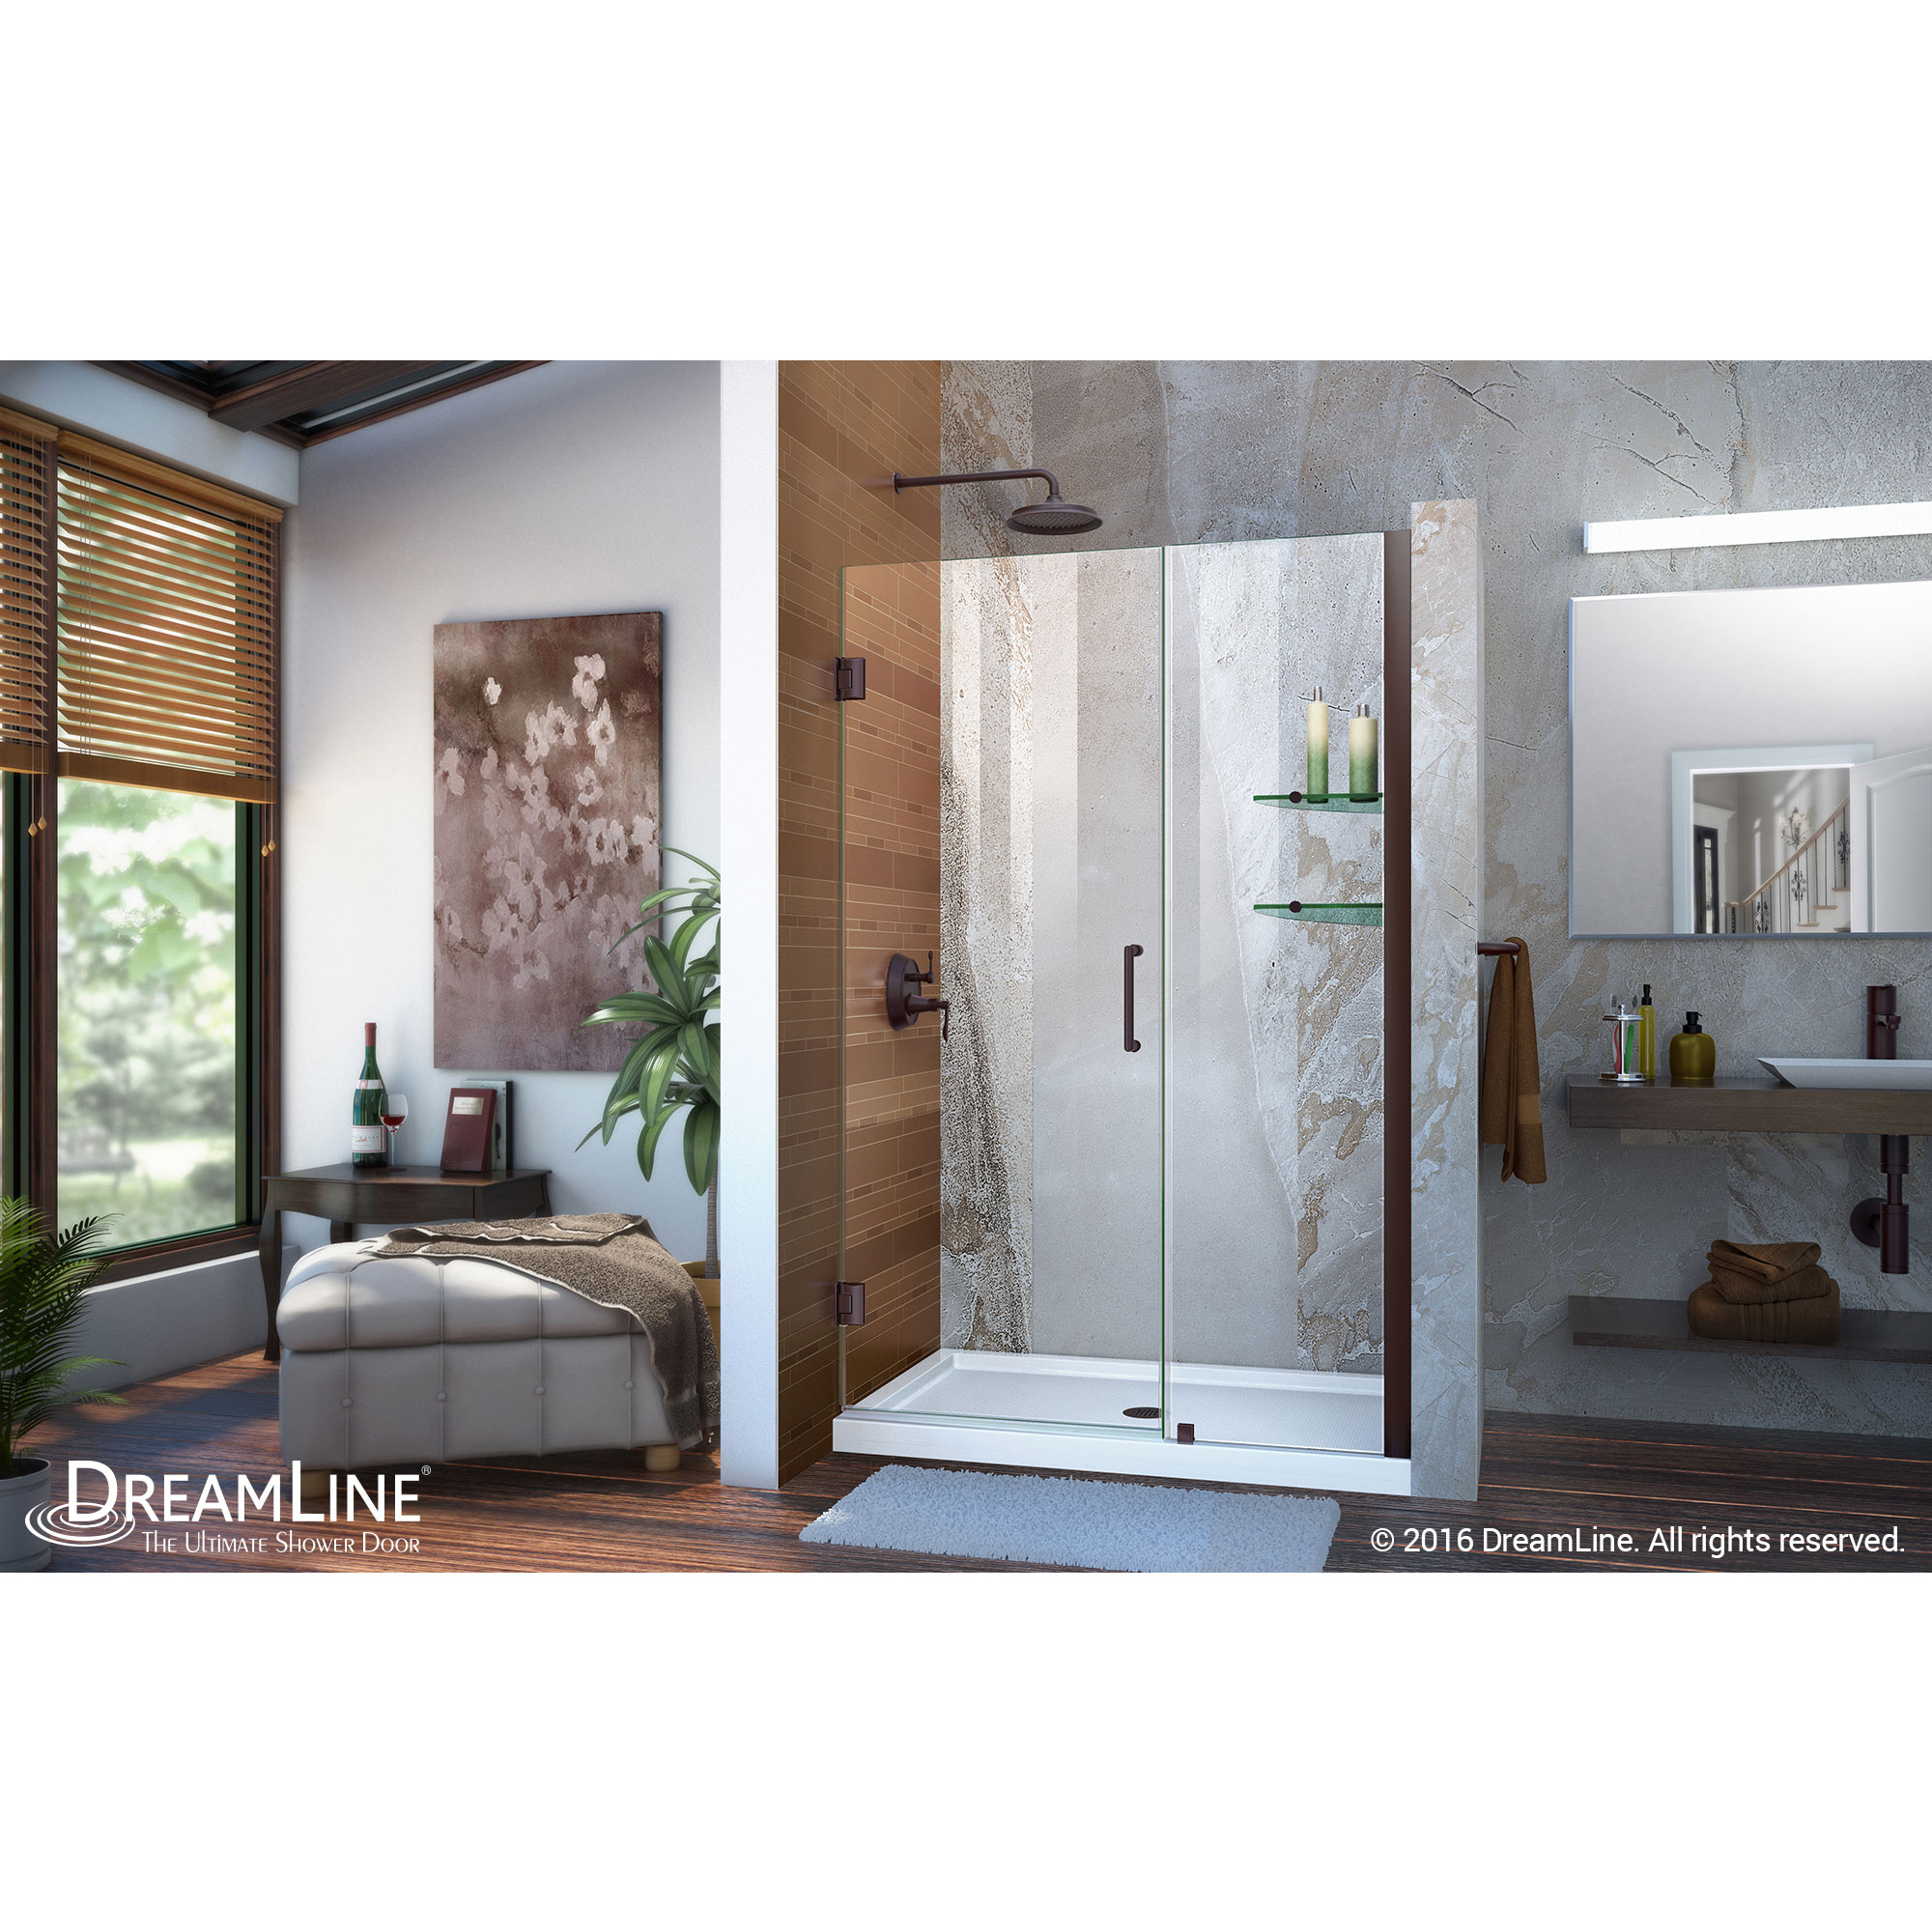 Unidoor 48 to 49" Frameless Hinged Shower Door, Clear 3/8" Glass Door, Oil Rubbed Bronze